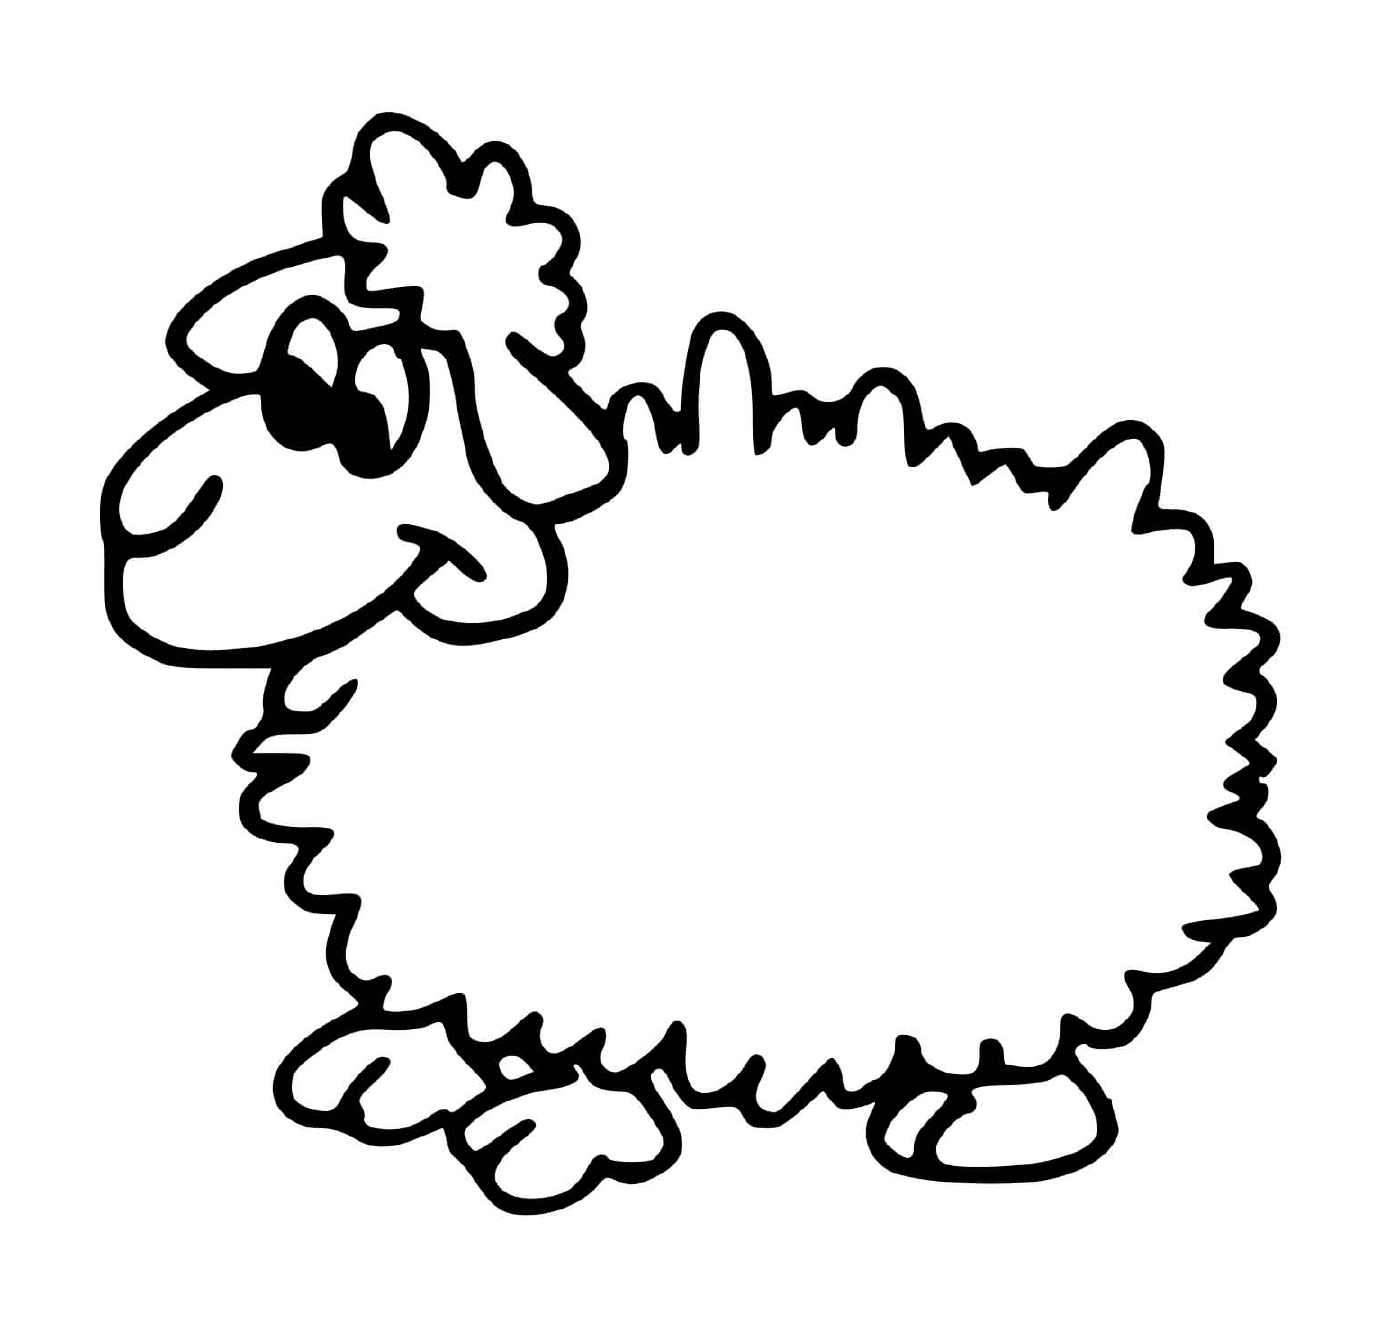  a sheep 